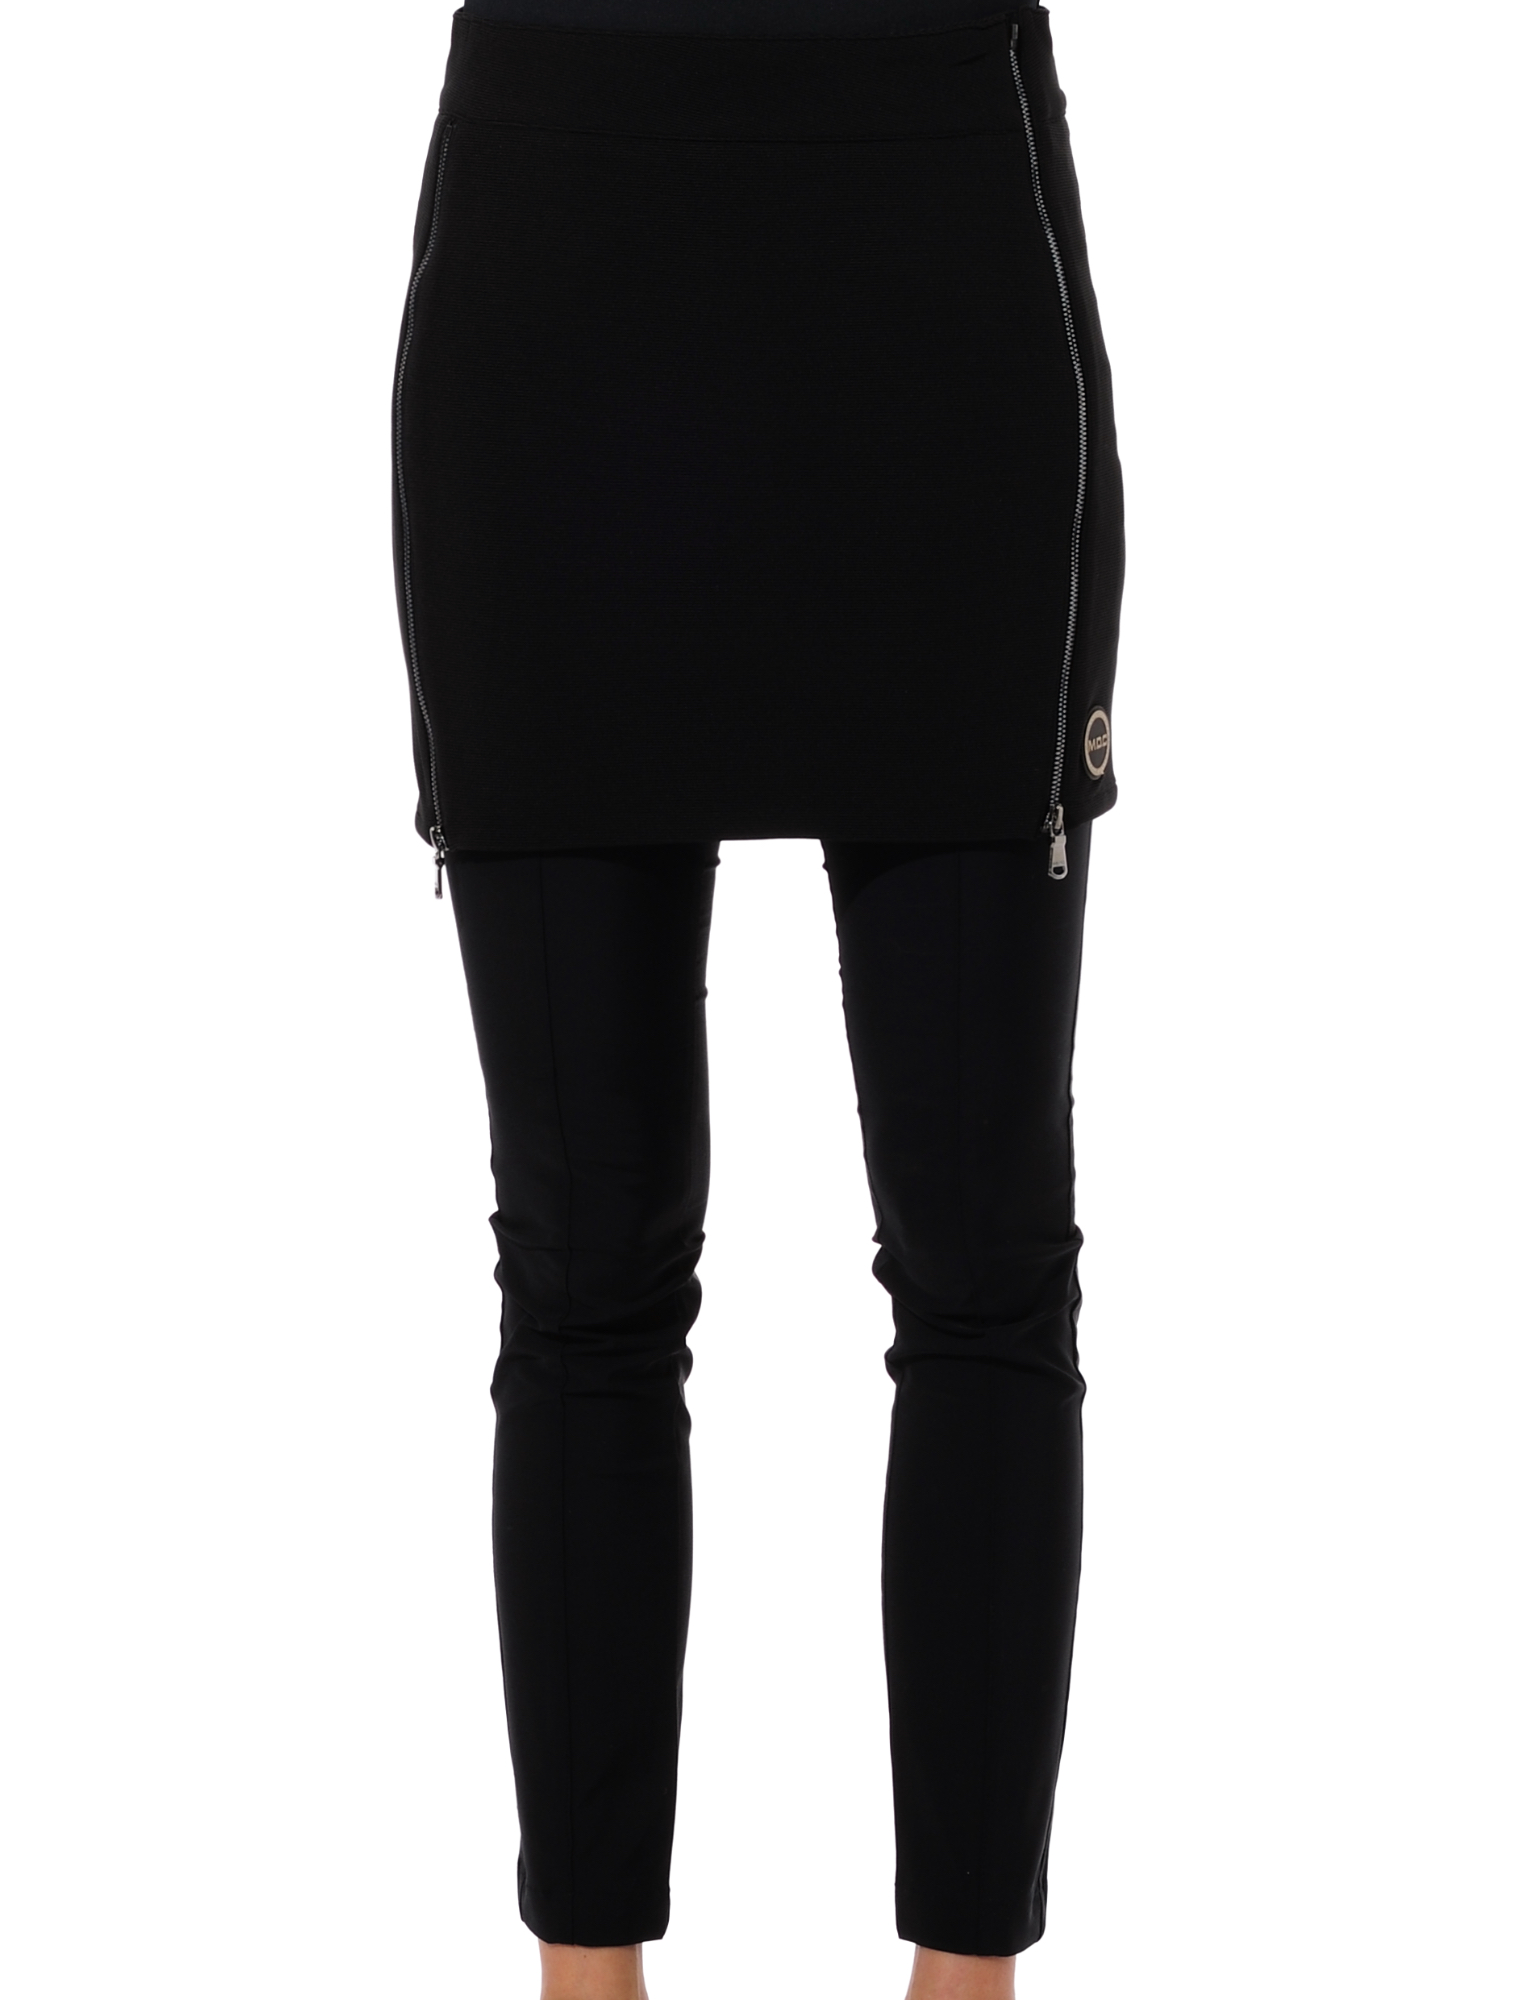 Stelvio skirt black 